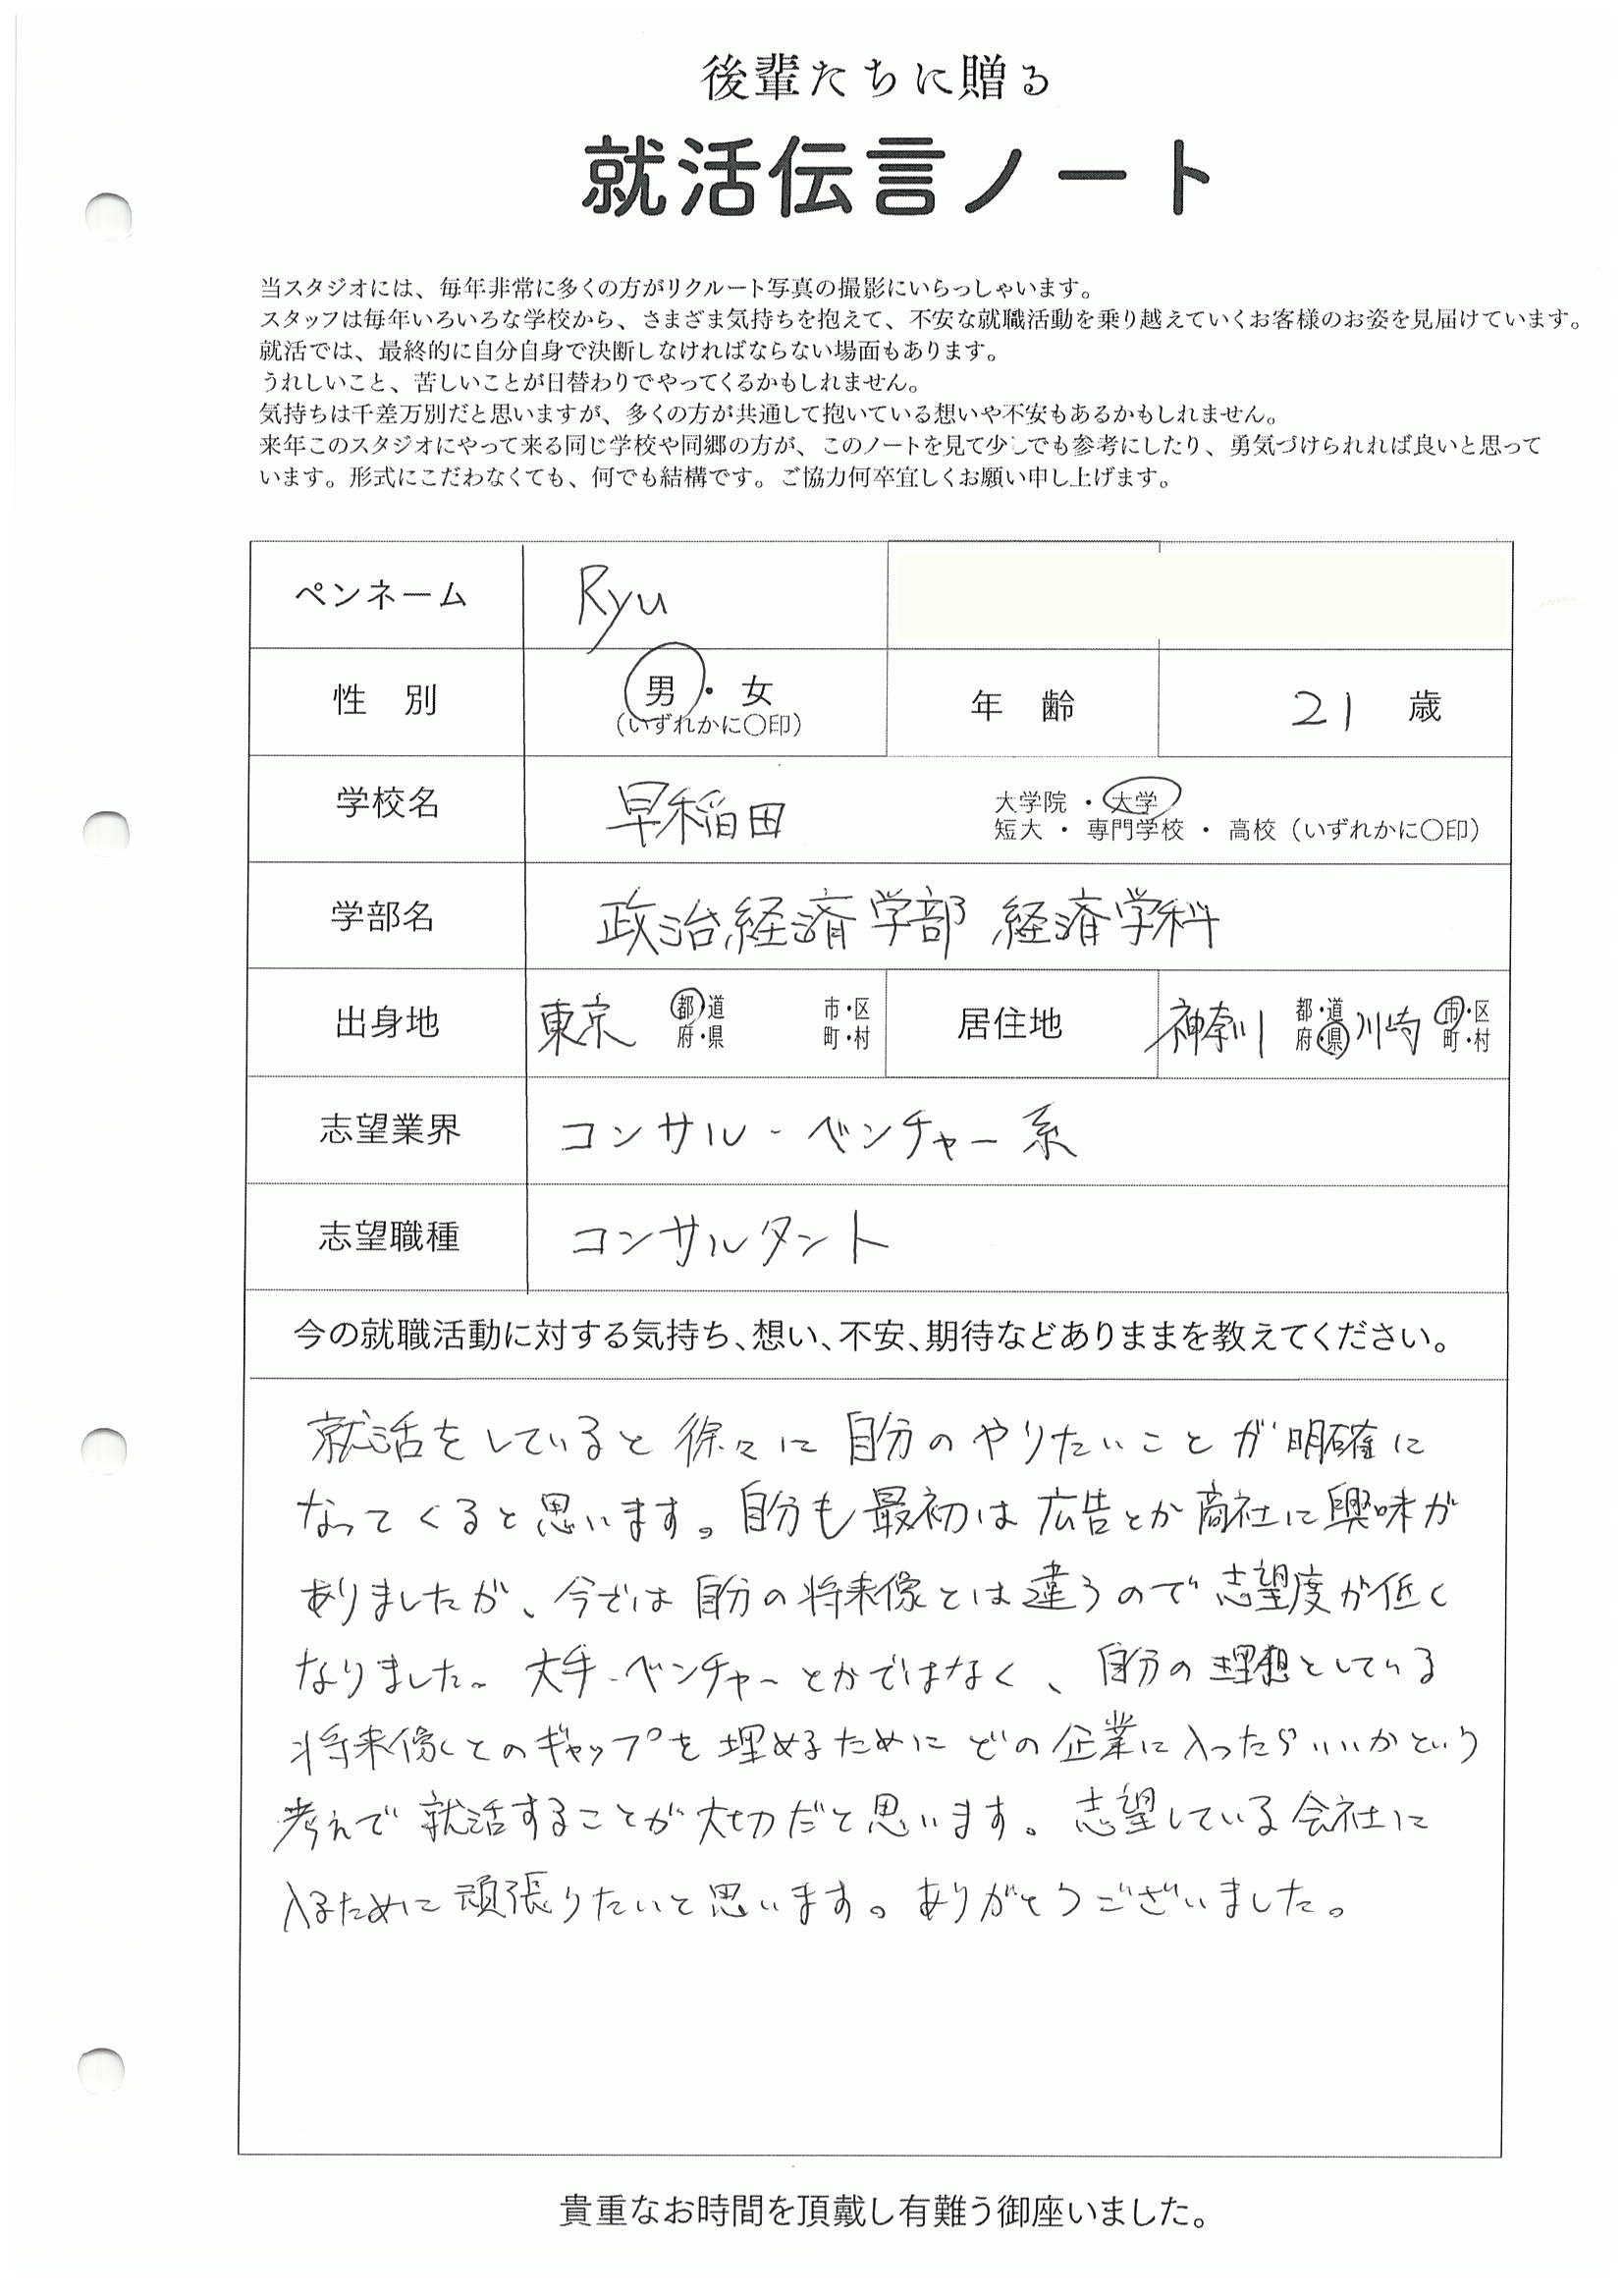 早稲田大学 政治経済学部 Ryuさんの直筆メッセージ リクルートフォトスタジオで就活証明写真を撮影